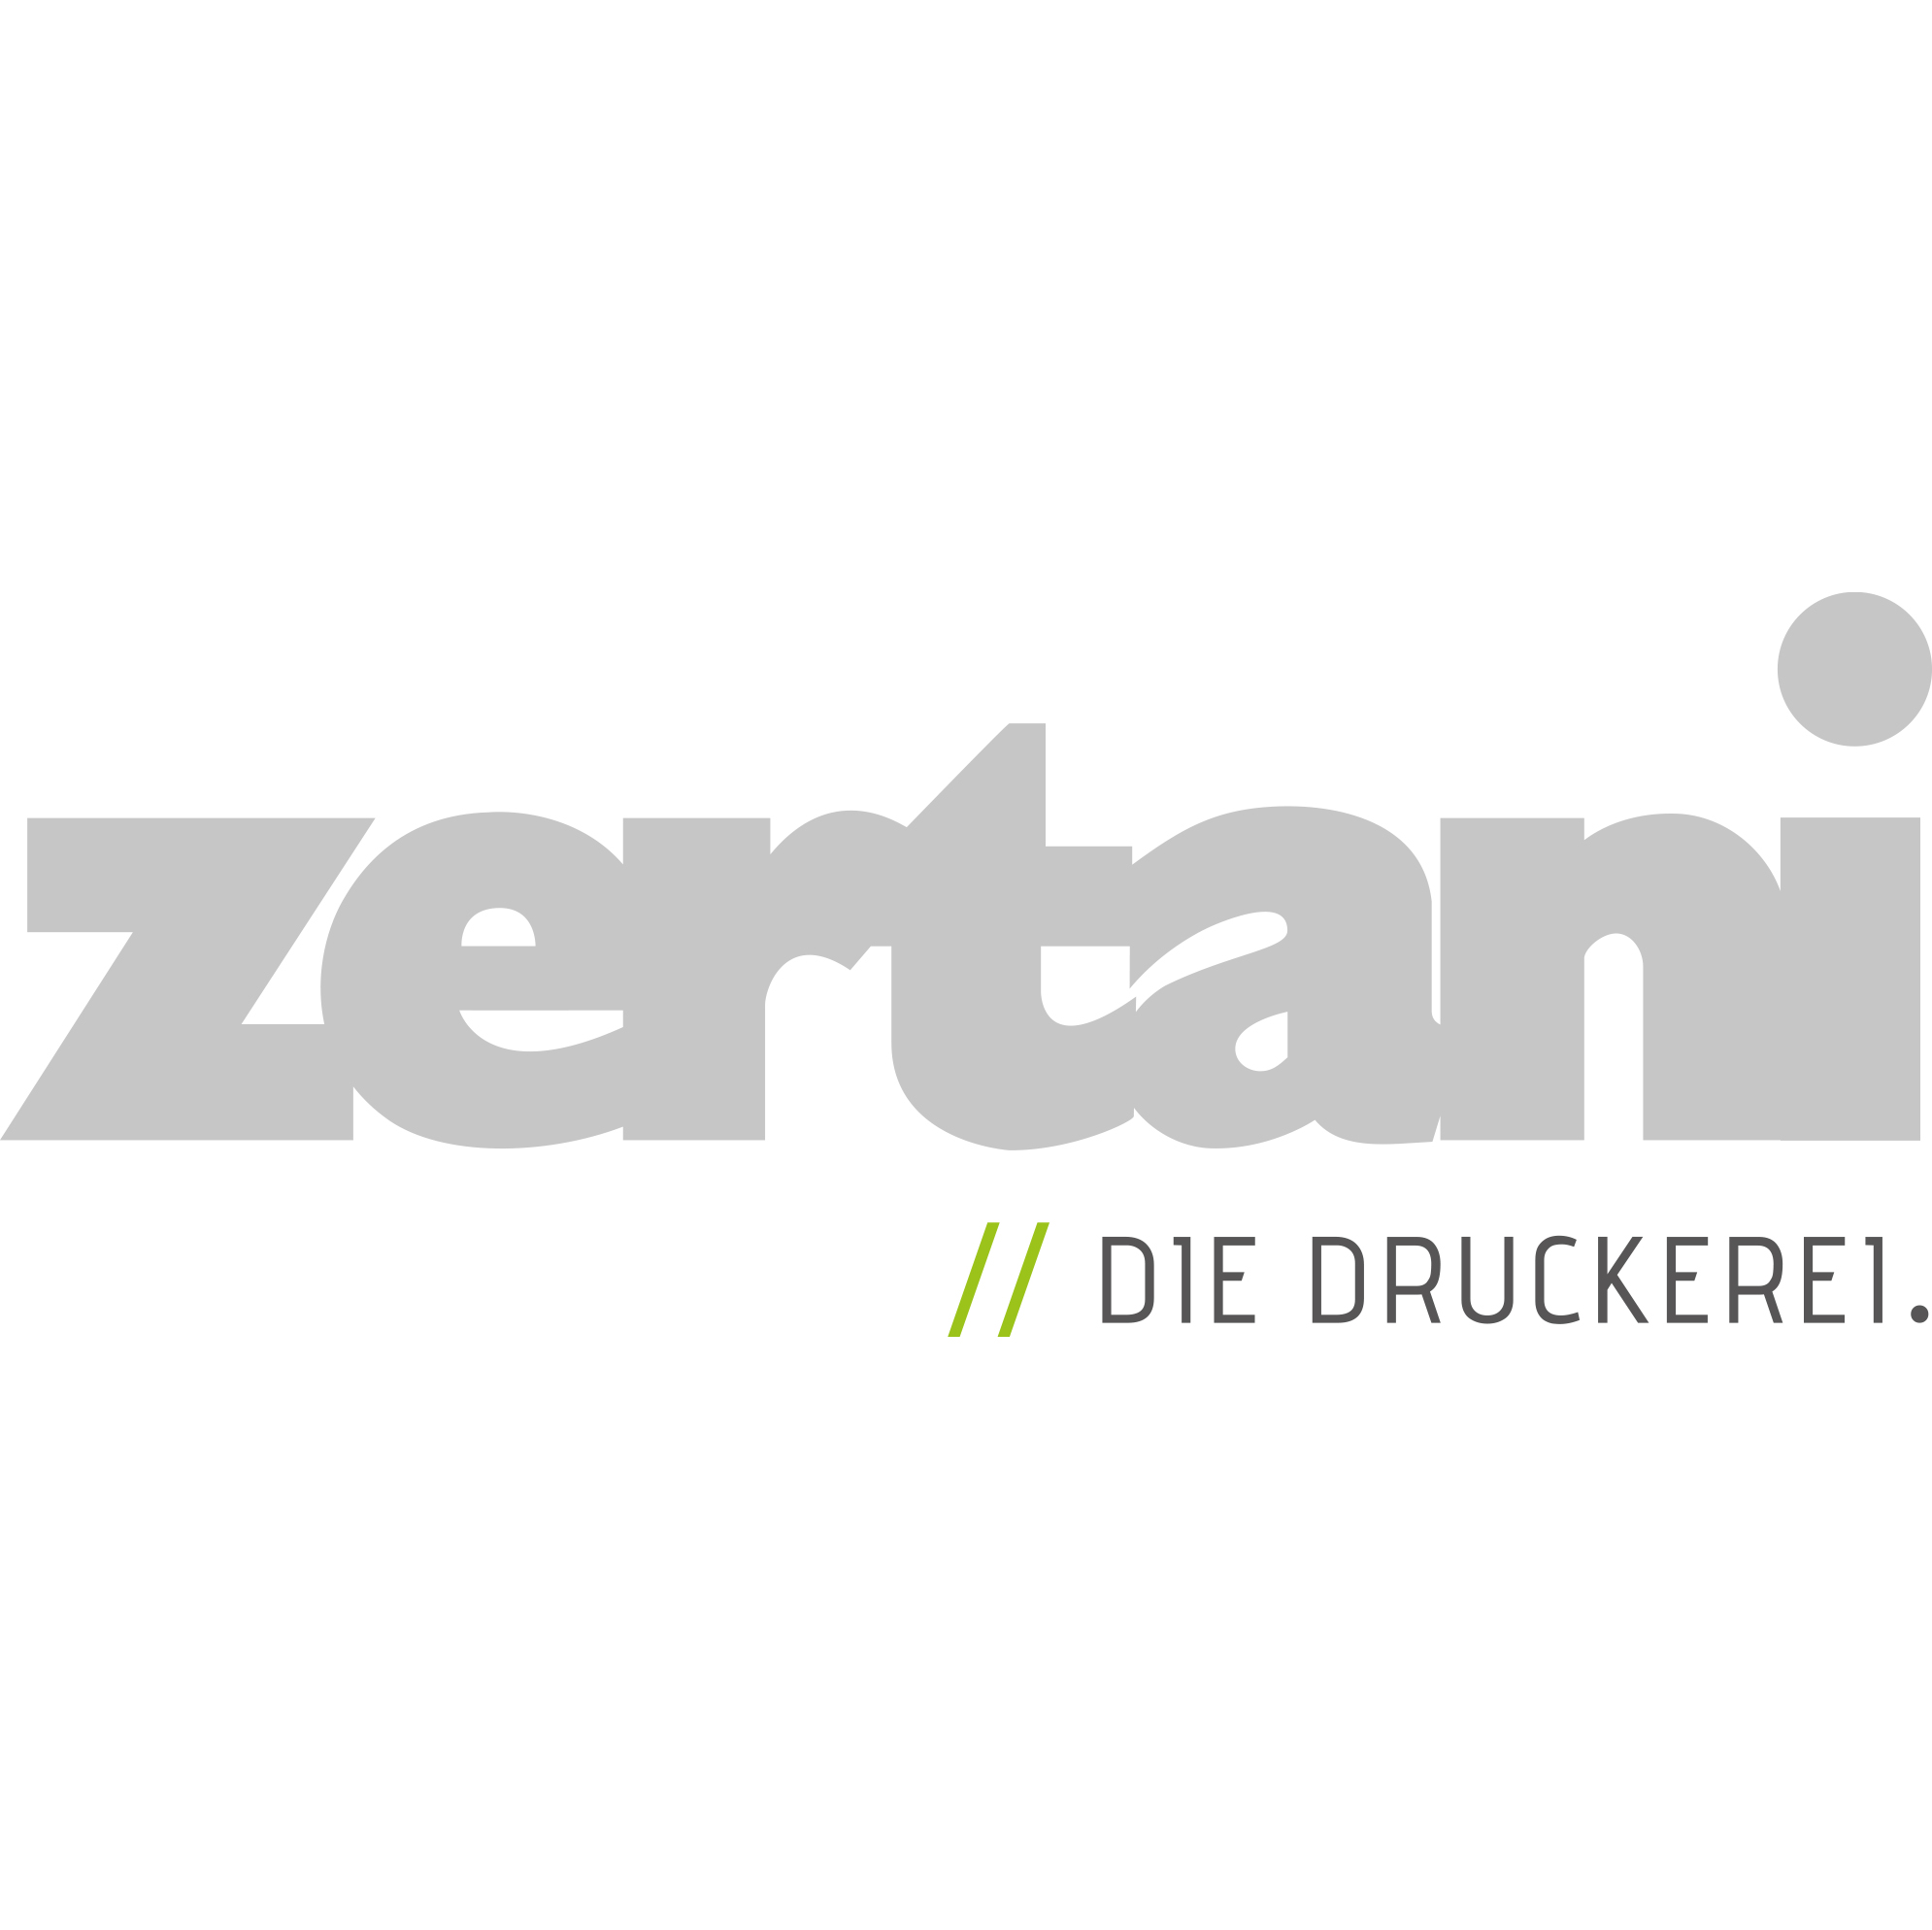 Zertani Logo aktuell_groesser_final.jpg